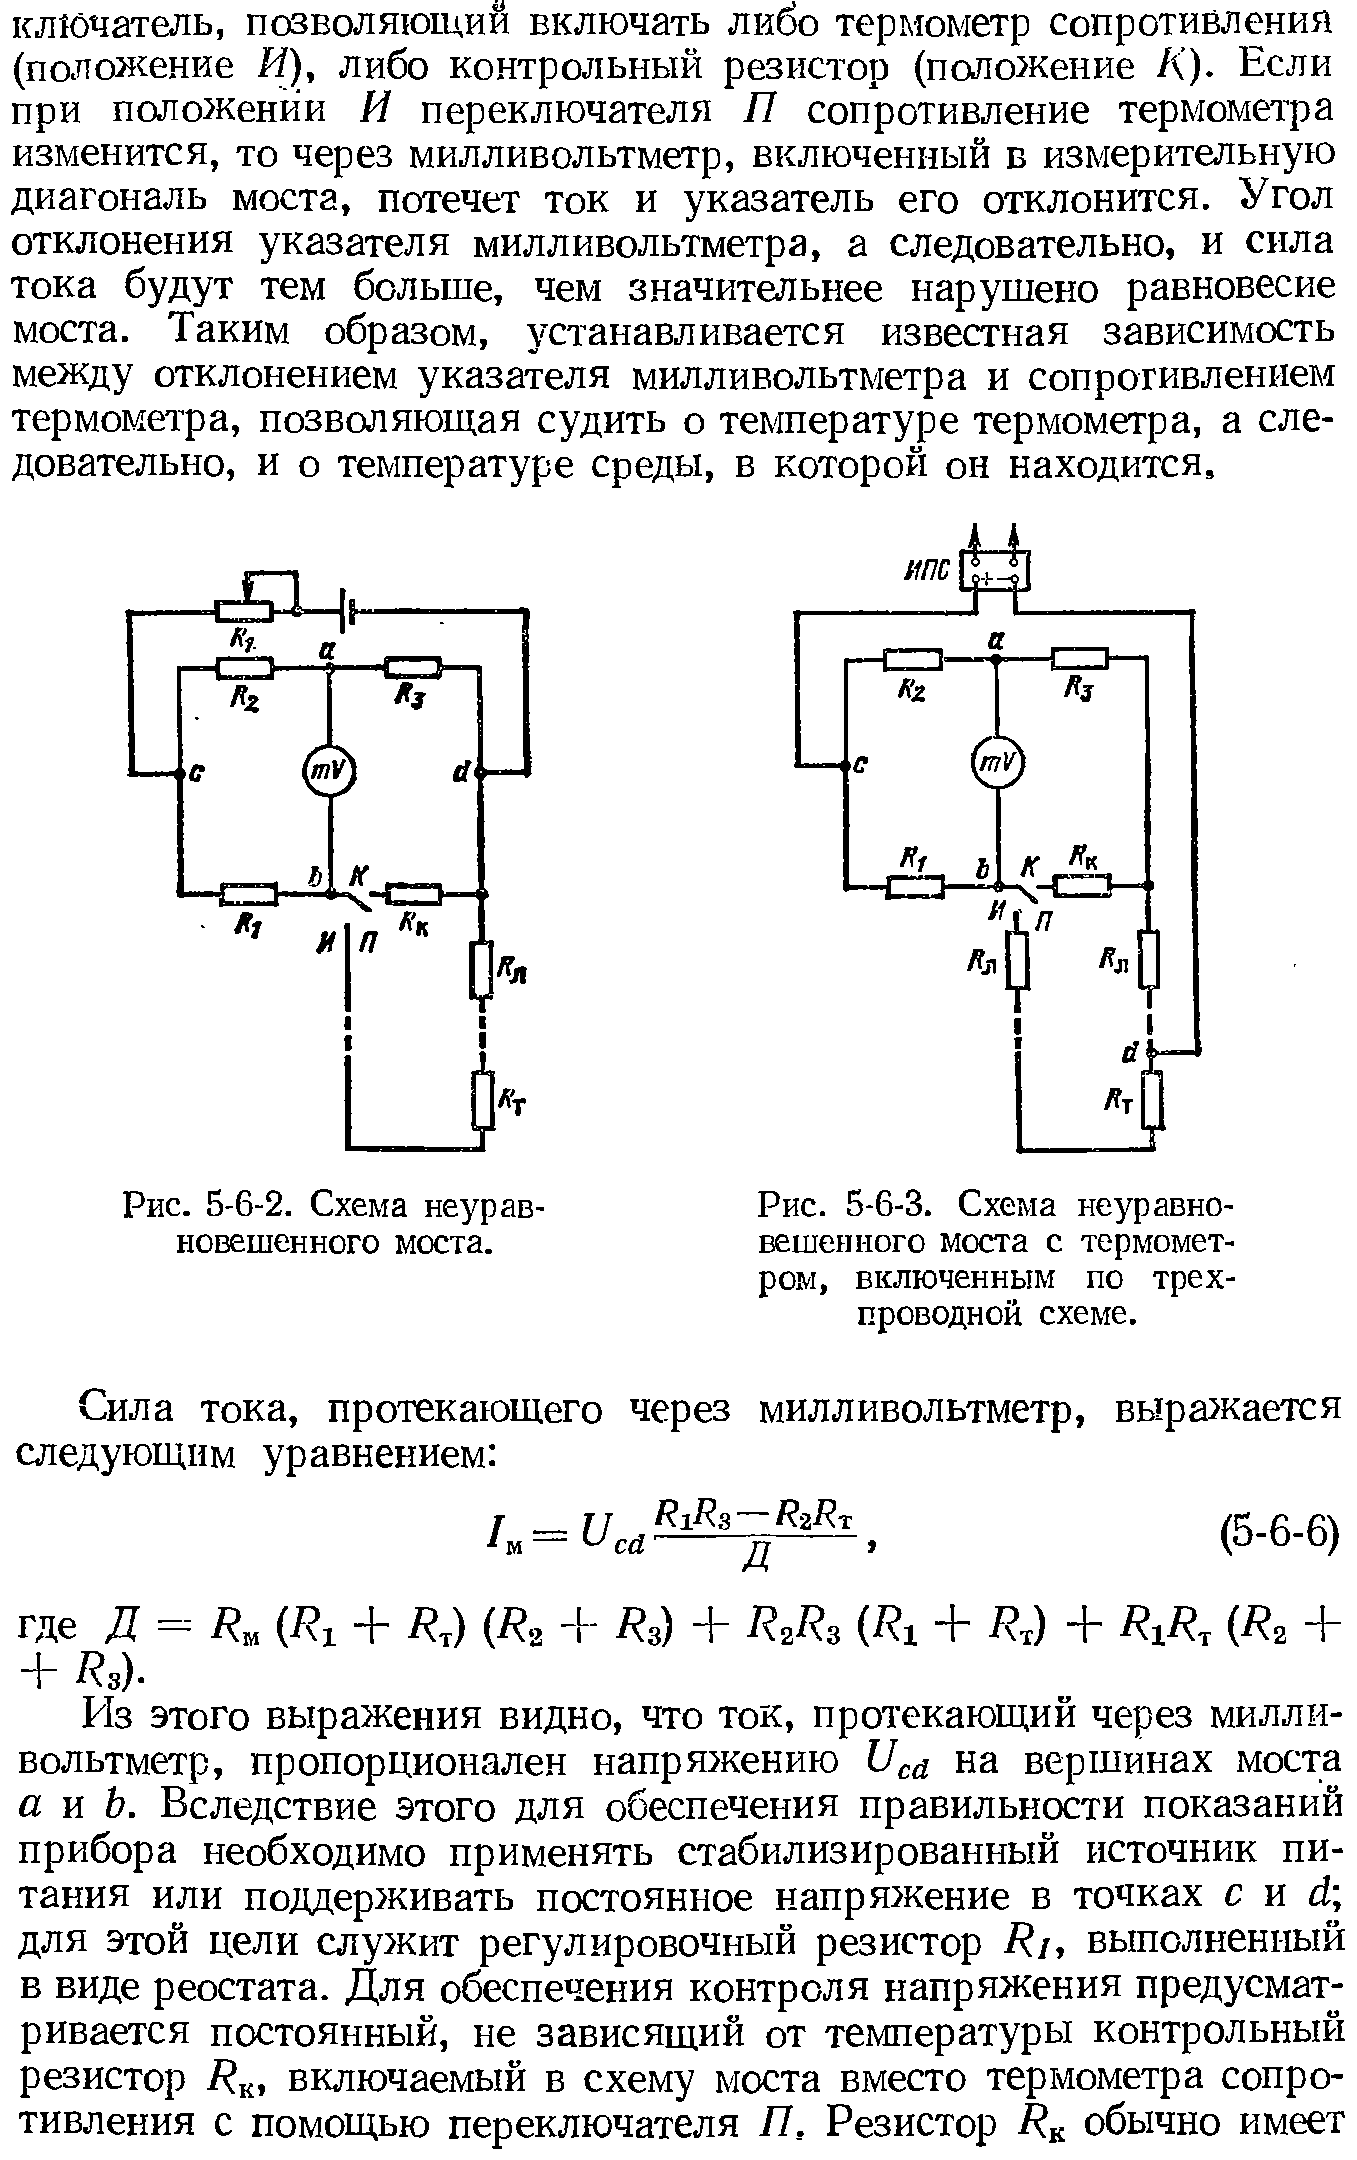 Рис. 5-6-3. Схема <a href="/info/427531">неуравновешенного моста</a> с термометром, включенным по трехпроводной схеме.
